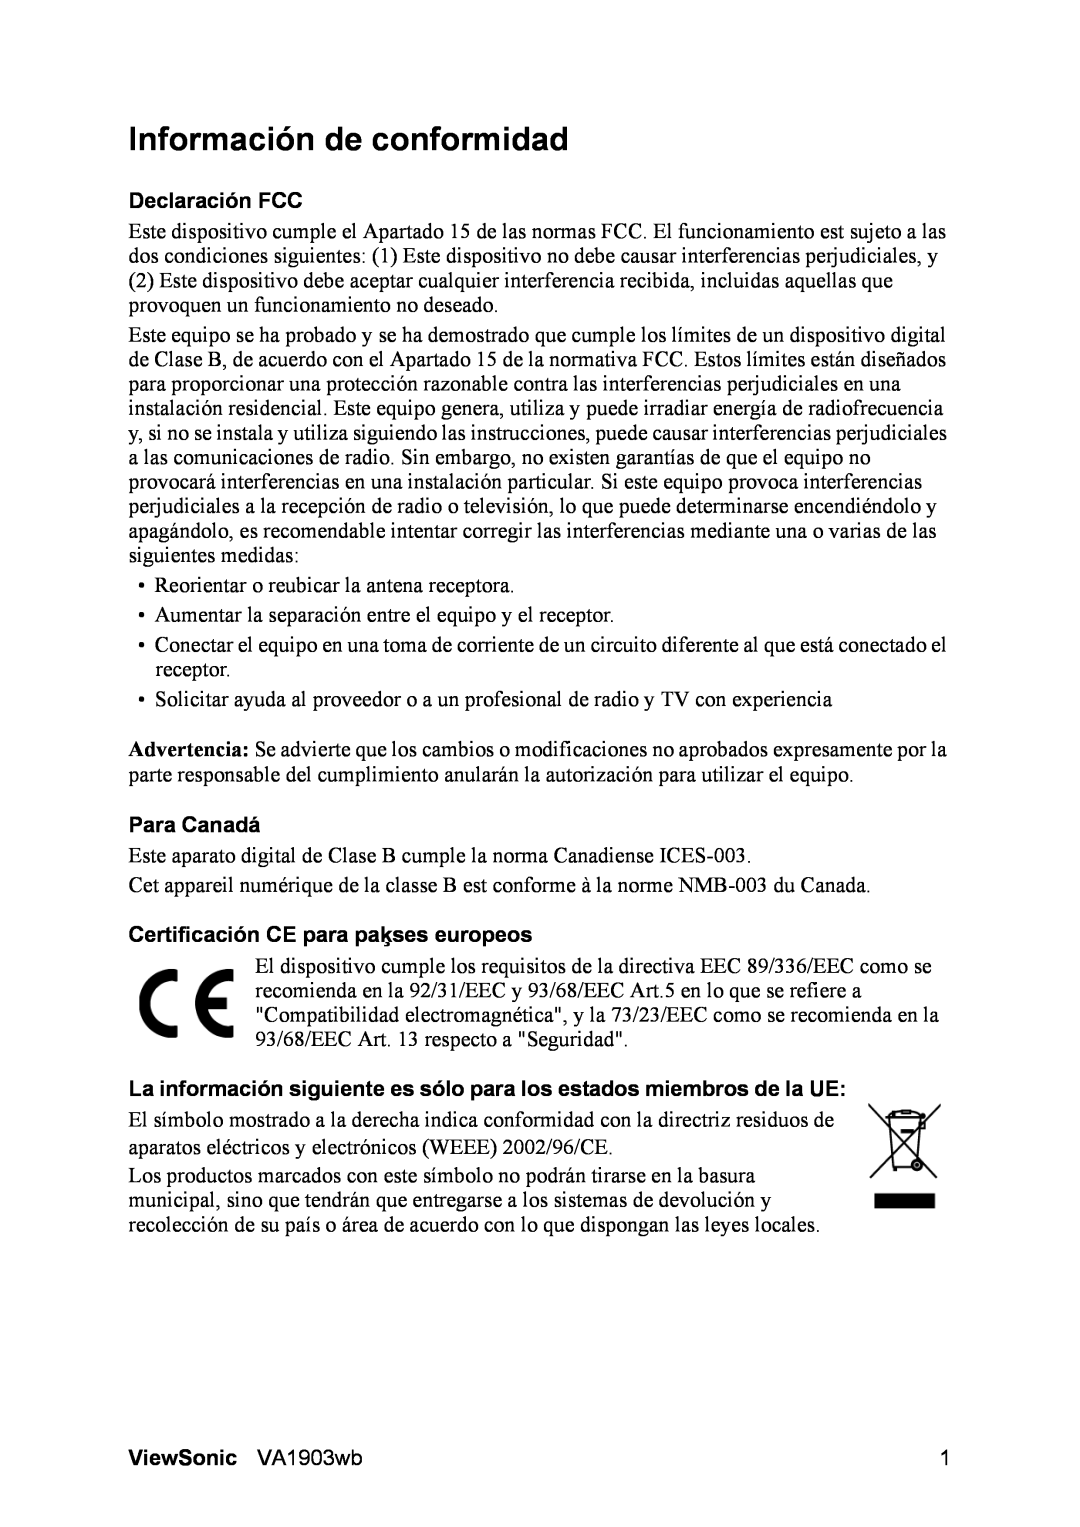 ViewSonic VA1903WB manual Información de conformidad, Declaración FCC, Para Canadá, Certificación CE para paķses europeos 